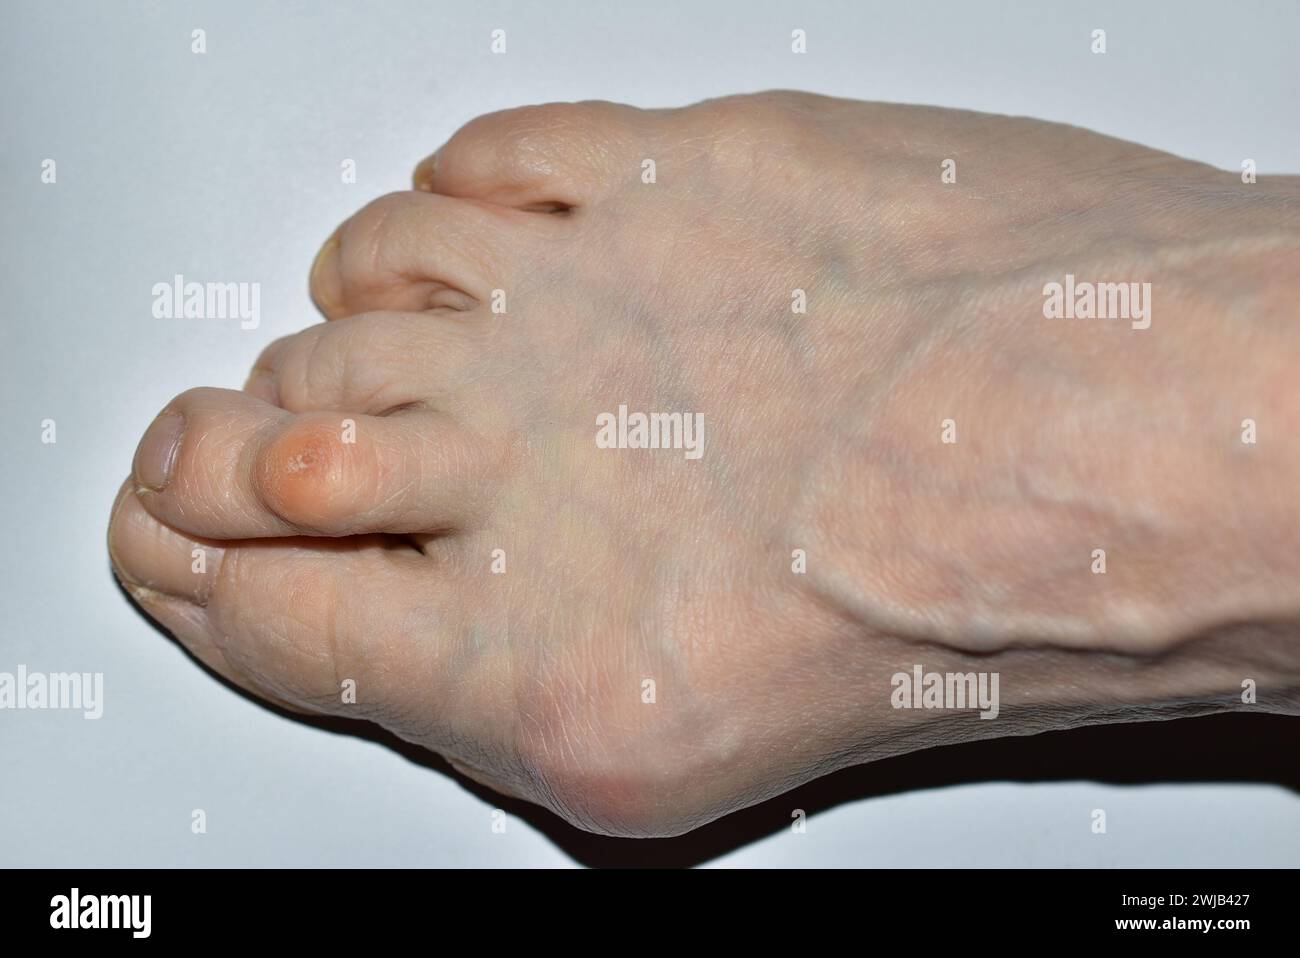 Das Bild zeigt eine Draufsicht des rechten Fußes einer Frau, die von der Krankheit Hulux valgus betroffen ist, die Zehen sind verdreht. Stockfoto